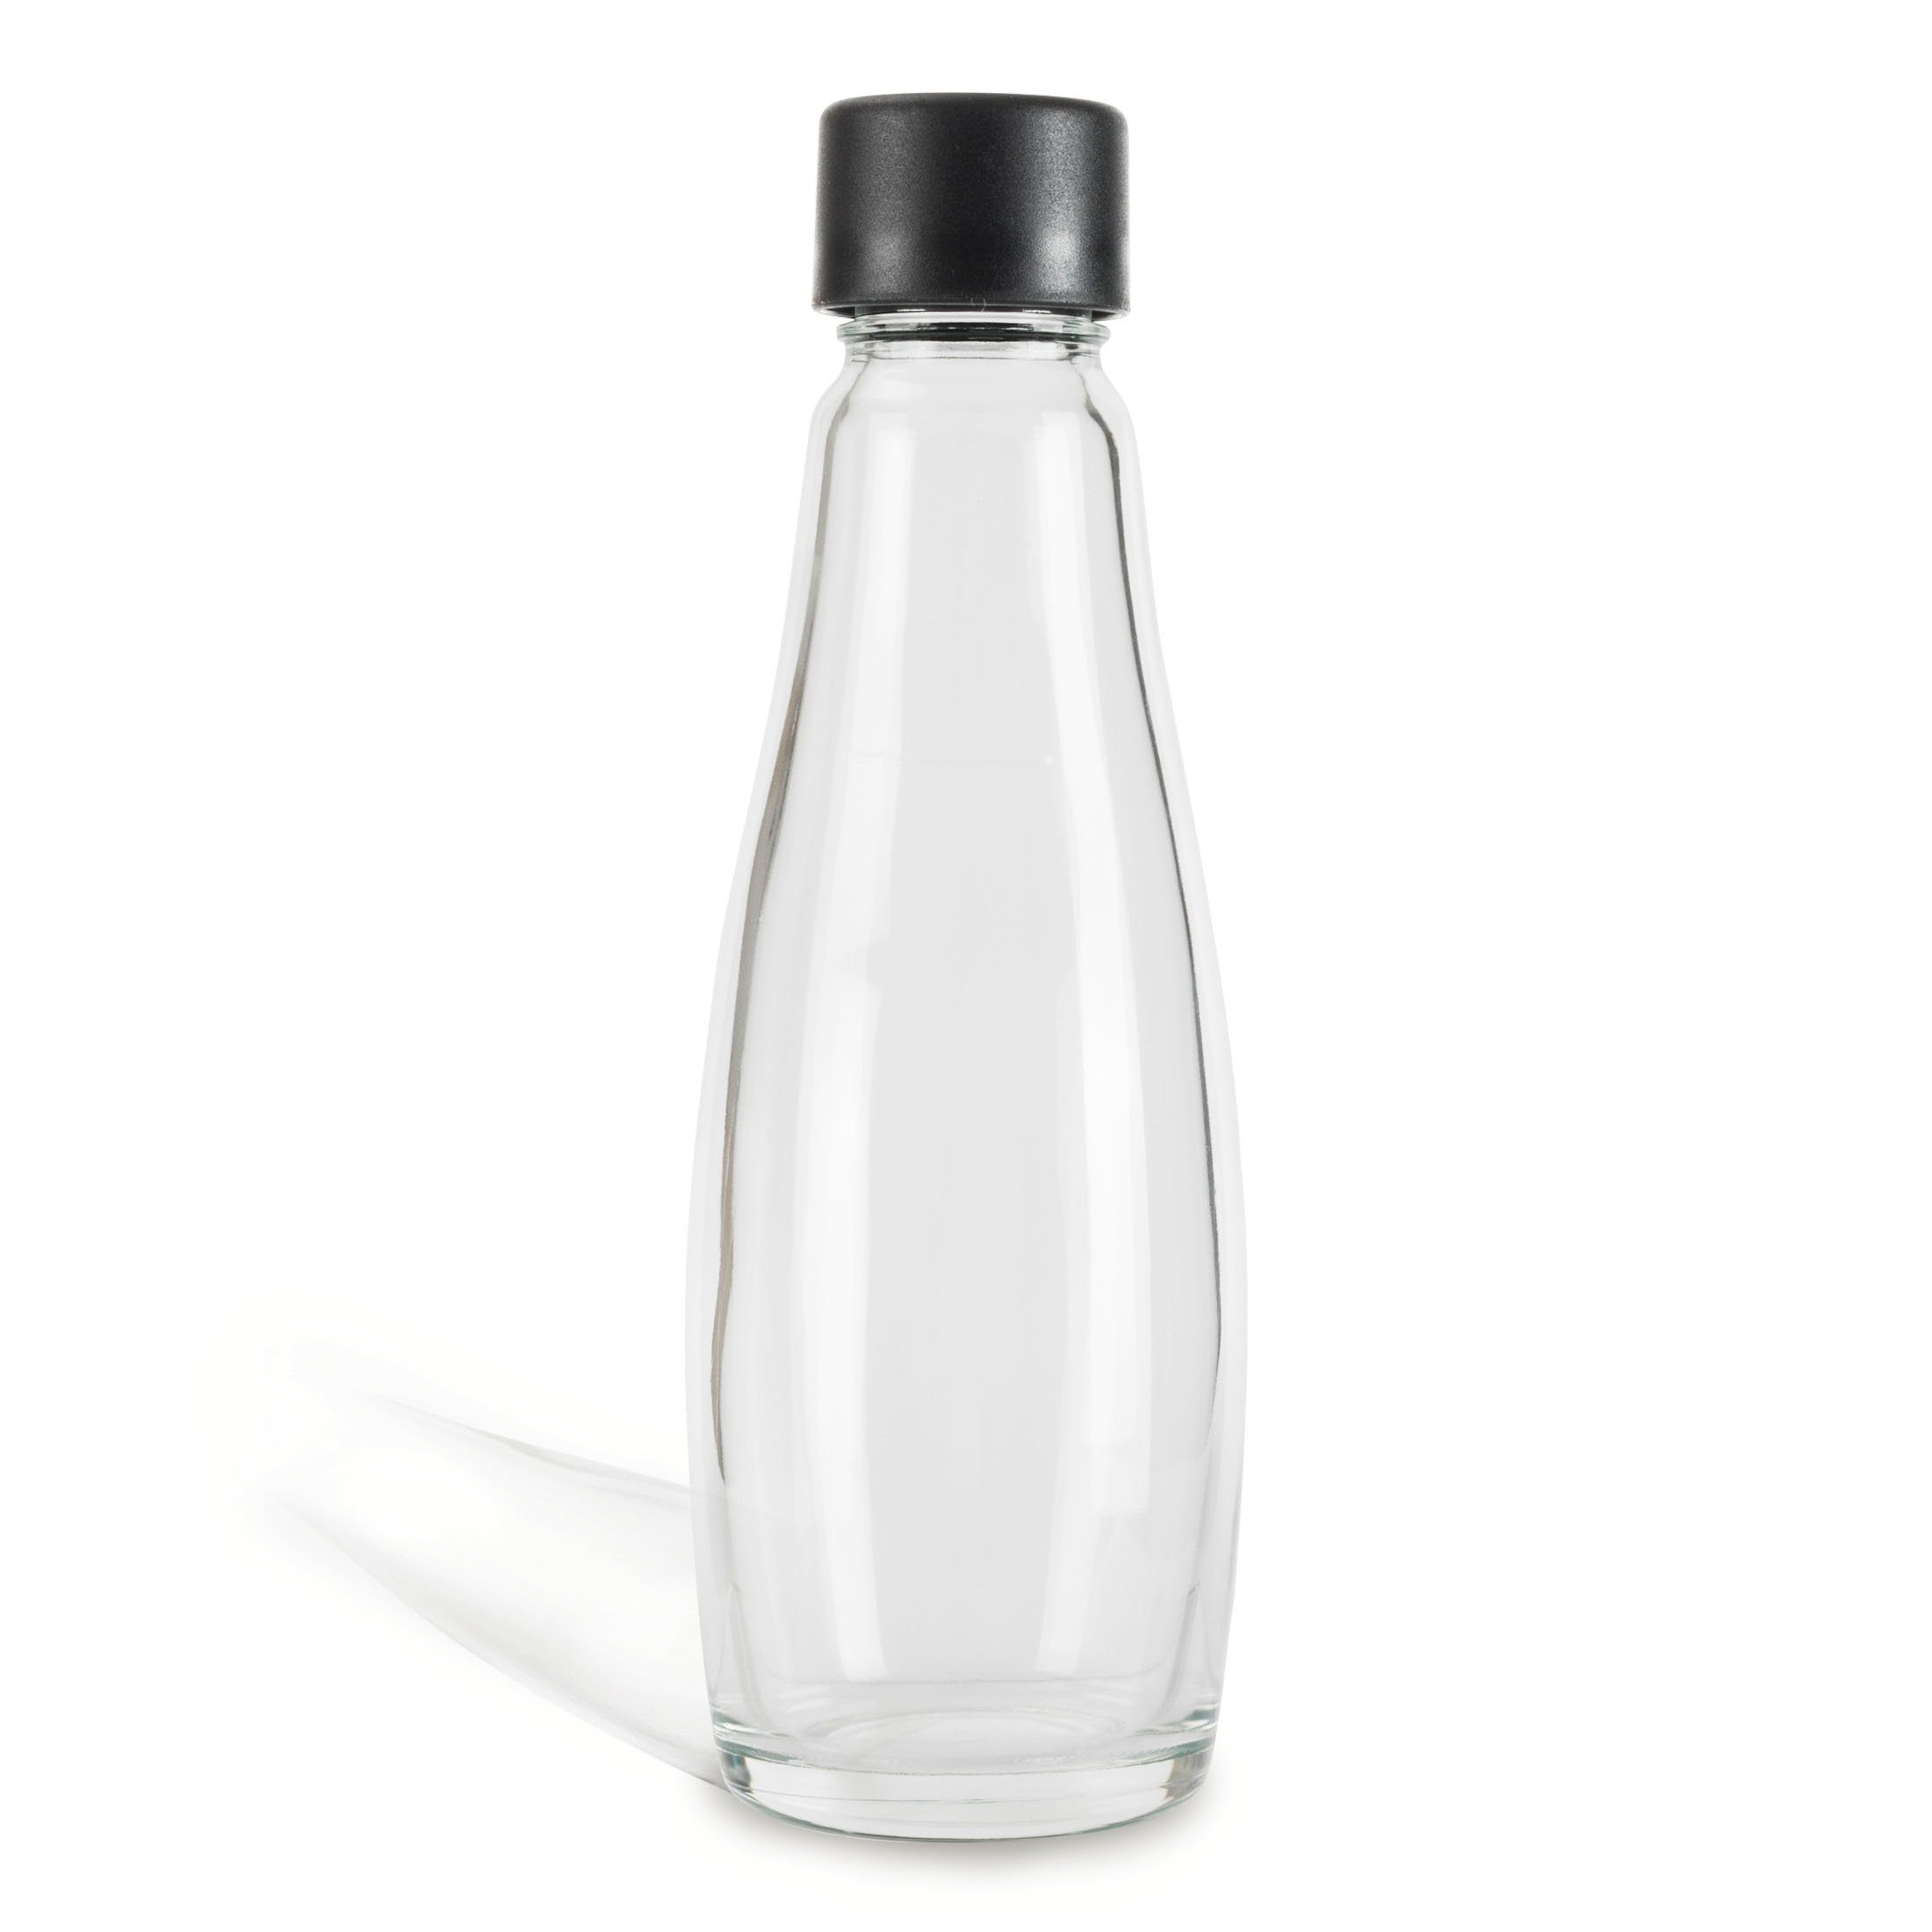 Zoomyo Wassersprudler Flasche Ersatz Glasflaschen für Wassersprudler, schickes Glaskaraffendesign, (set, 1 x Glasflasche), ca. 0,6Liter Volumen,1, 2 oder 3 Sprudler-Flaschen im Set, stabil Glasflasche 1er | Wassersprudler-Flaschen